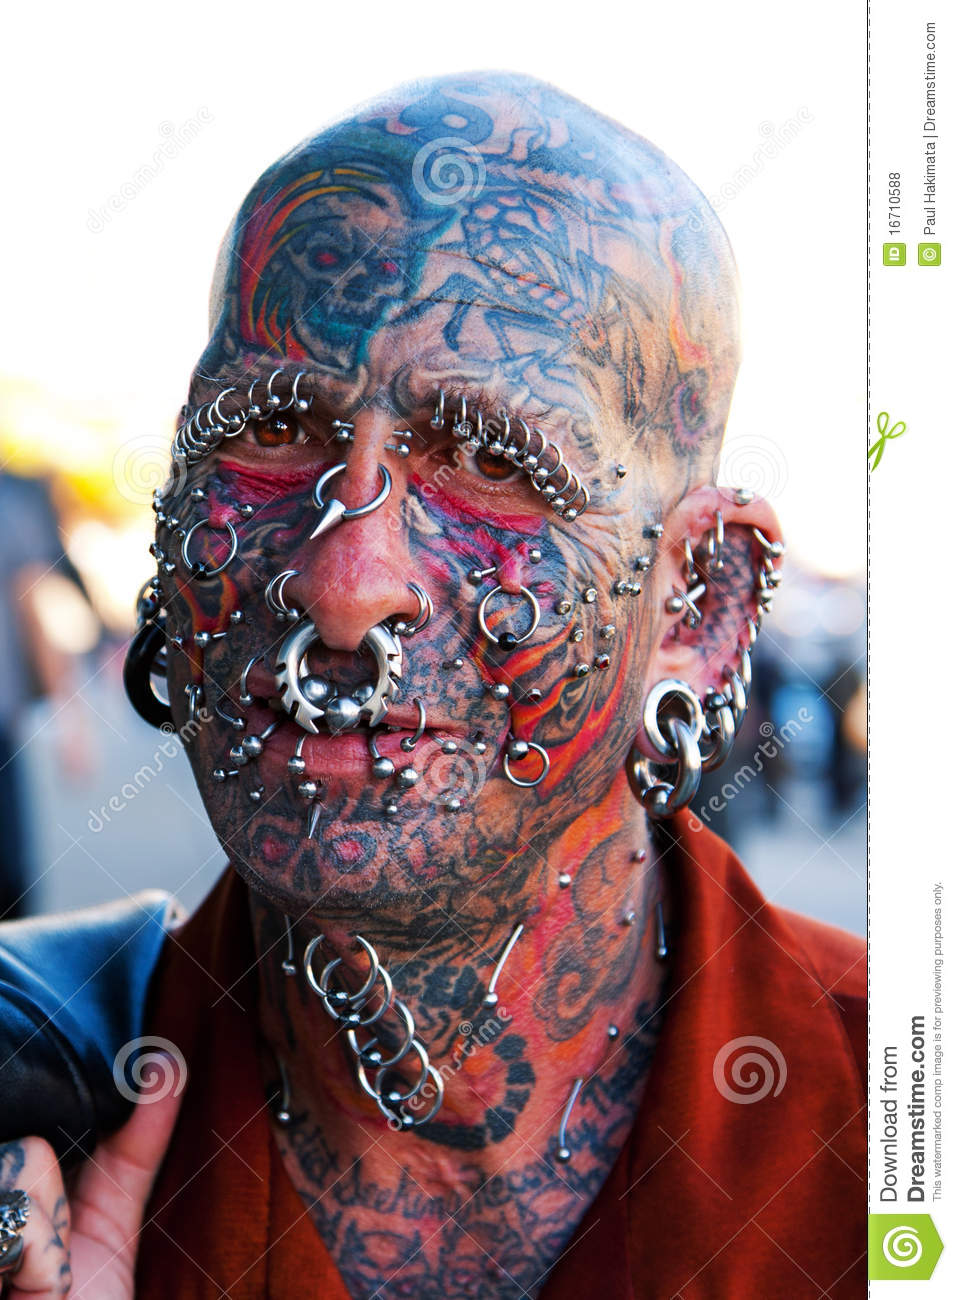 face-tattoos-piercings-16710588.jpg